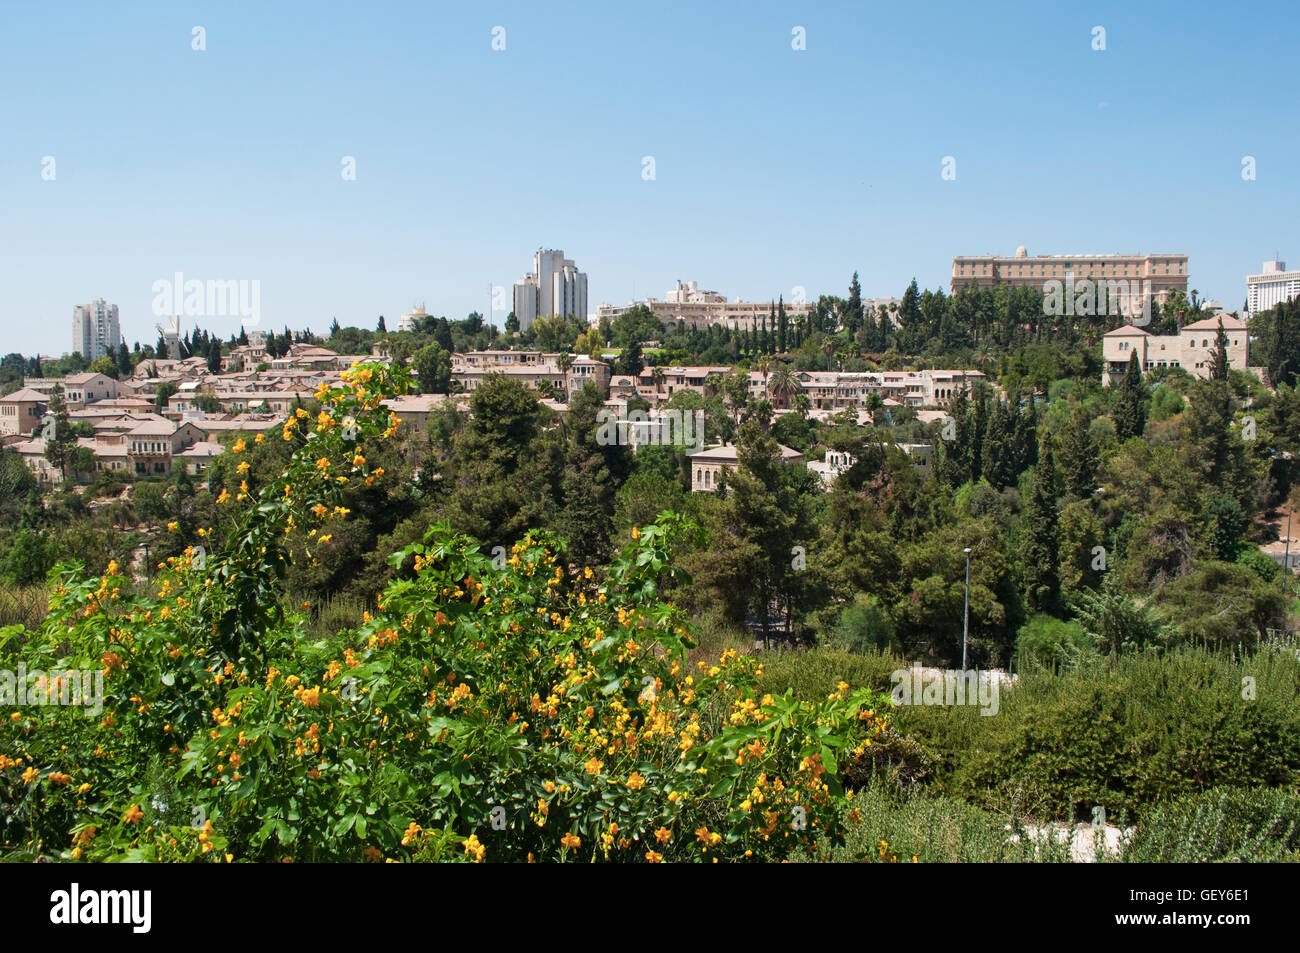 Jerusalén, Israel: vista al oeste hacia la Ciudad Nueva con Mishkenot Sha'ananim, el primer barrio judío fuera de las antiguas murallas de la ciudad antigua Foto de stock